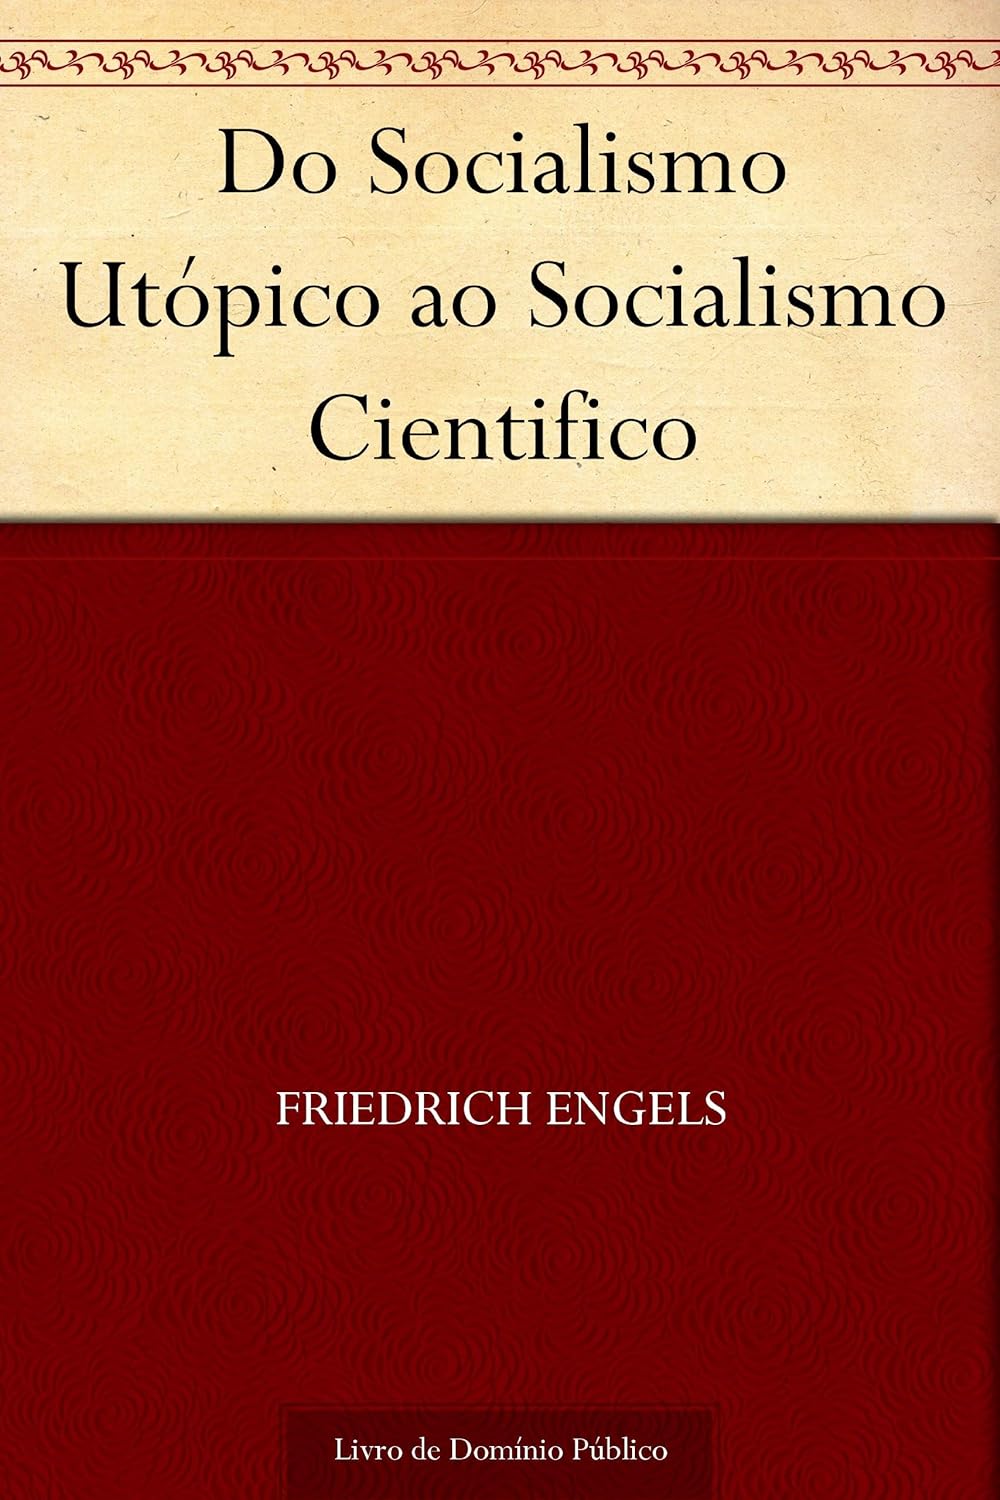 Friedrich Engels: Do Socialismo Utópico ao Socialismo Cientifico (EBook, Português language)